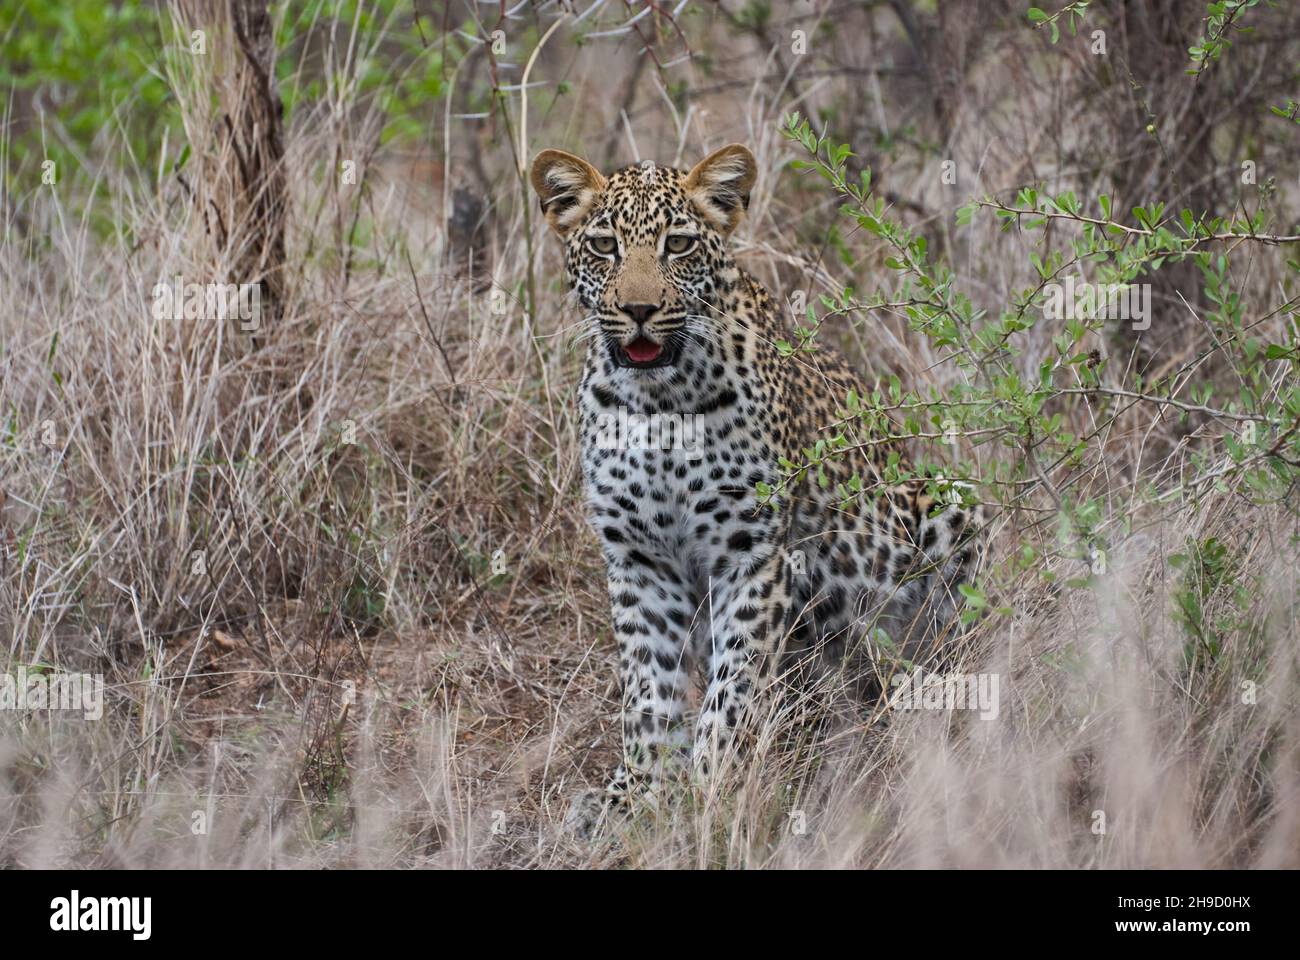 leopardo, Panthera pardus, un grande predatore e gatto selvatico africano che si stucco attraverso l'erba alta, essendo perfettamente mimetato Foto Stock